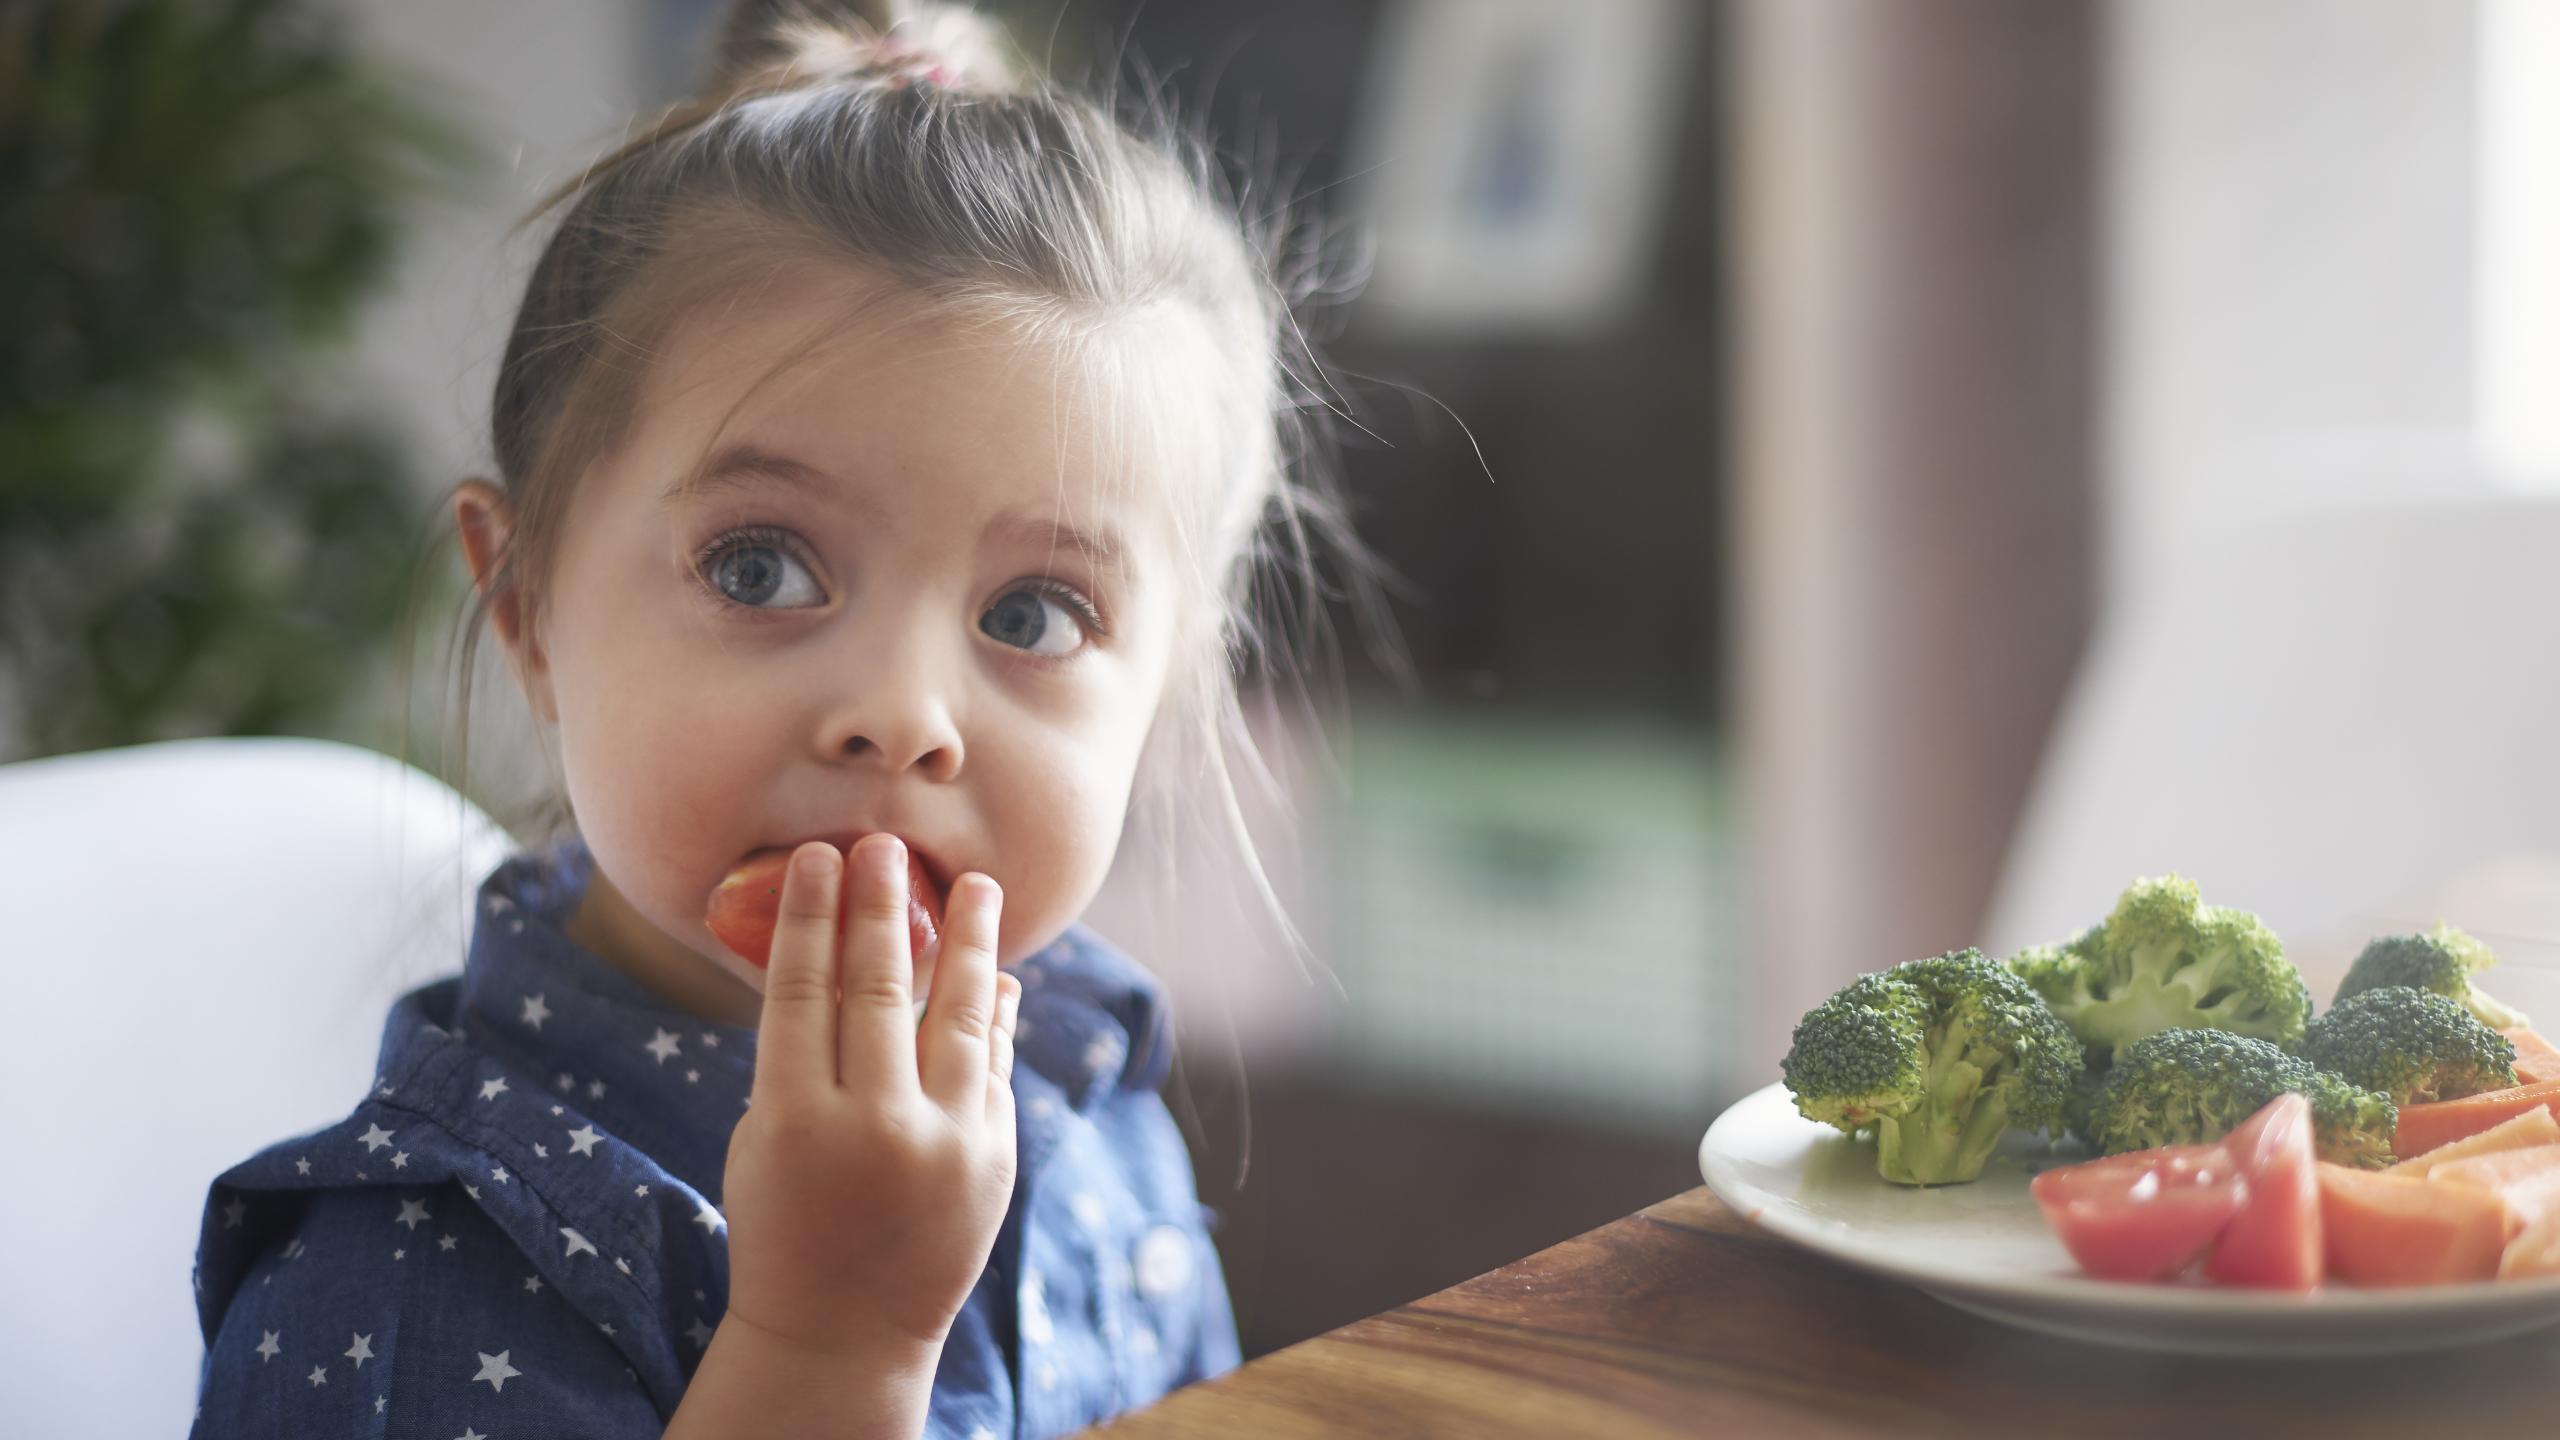 Веганская диета сильно повлияла на метаболизм детей